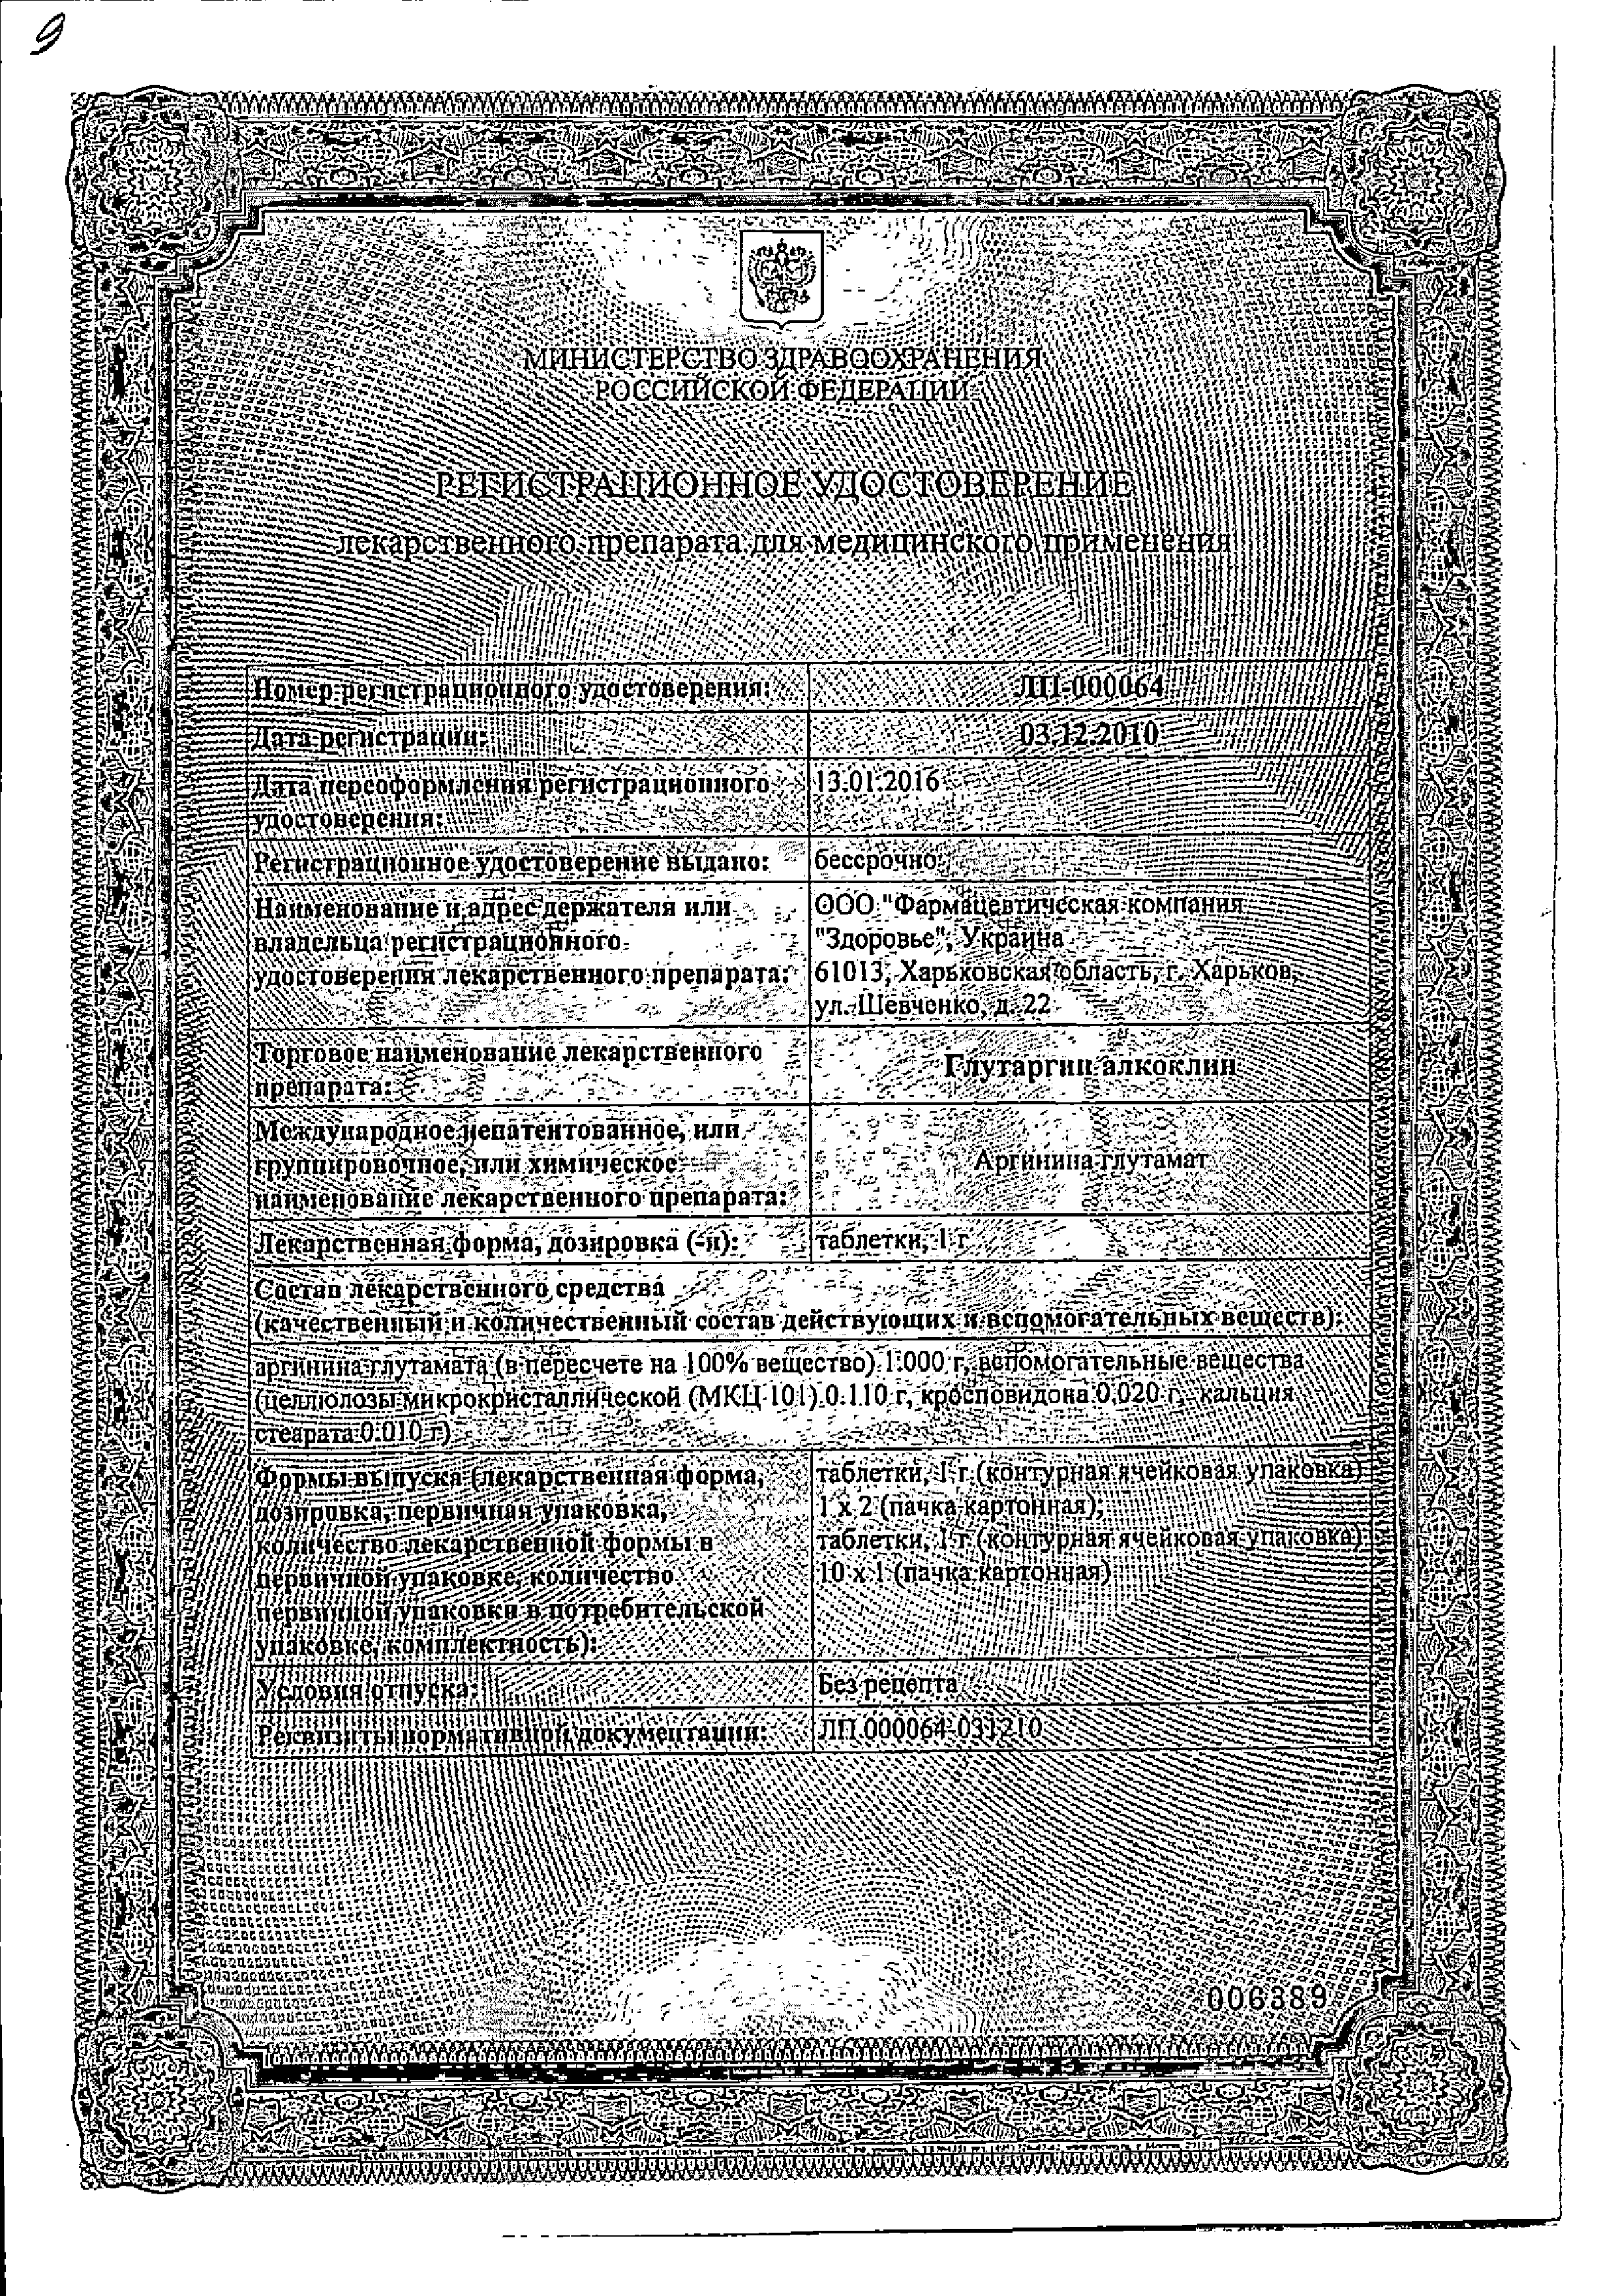 Глутаргин алкоклин сертификат